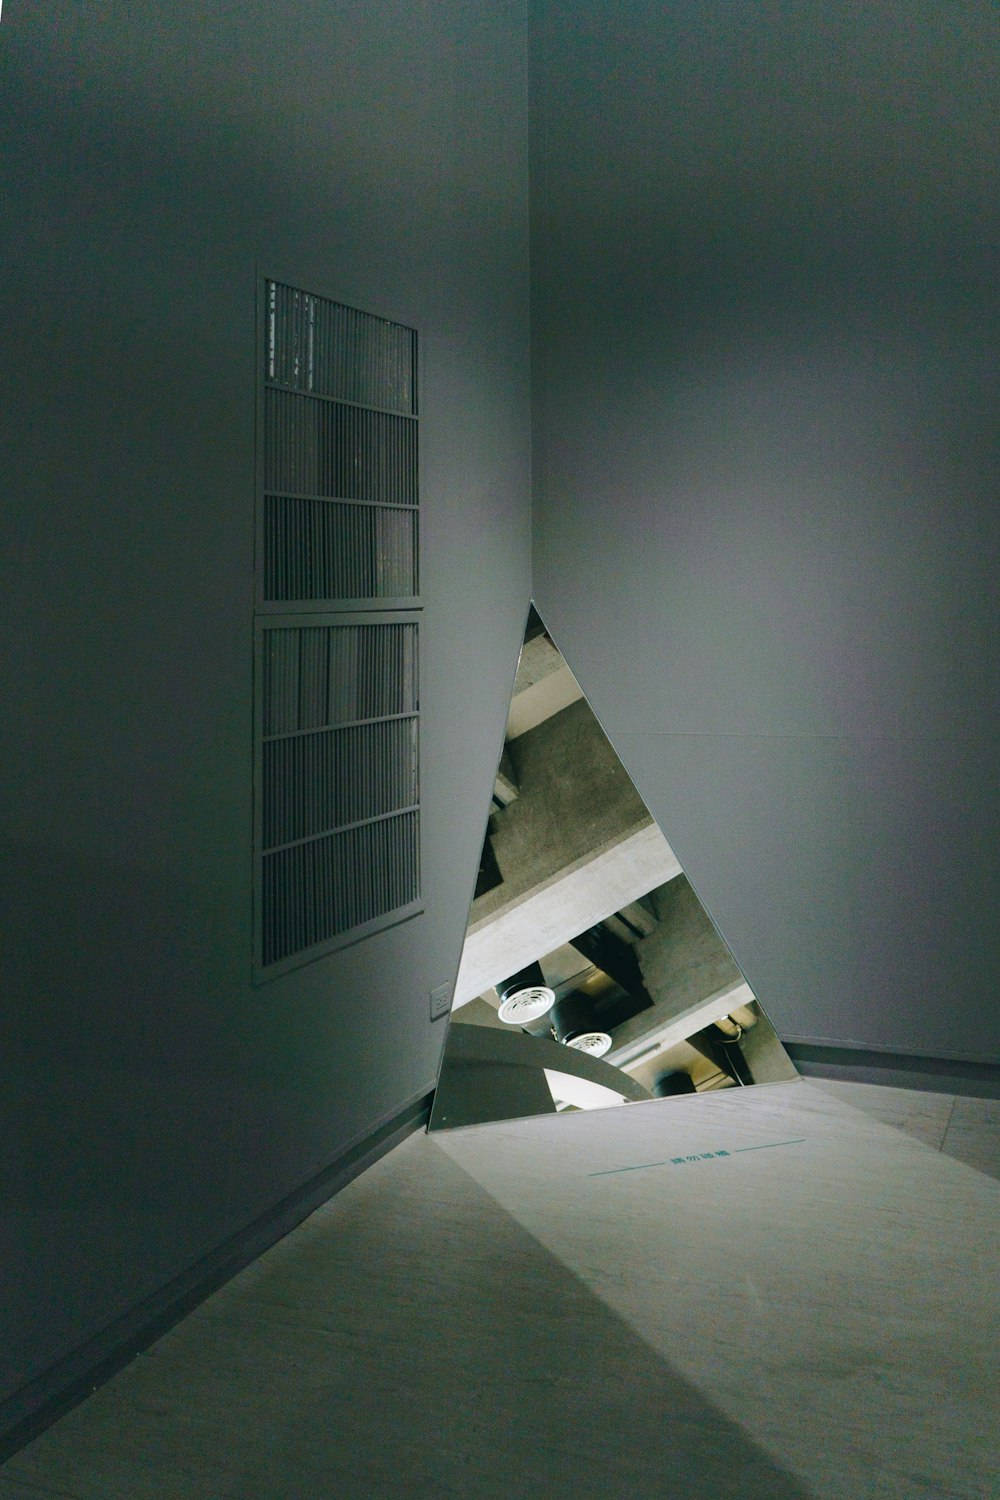 Una habitación con un objeto en forma de triángulo en el medio de ella